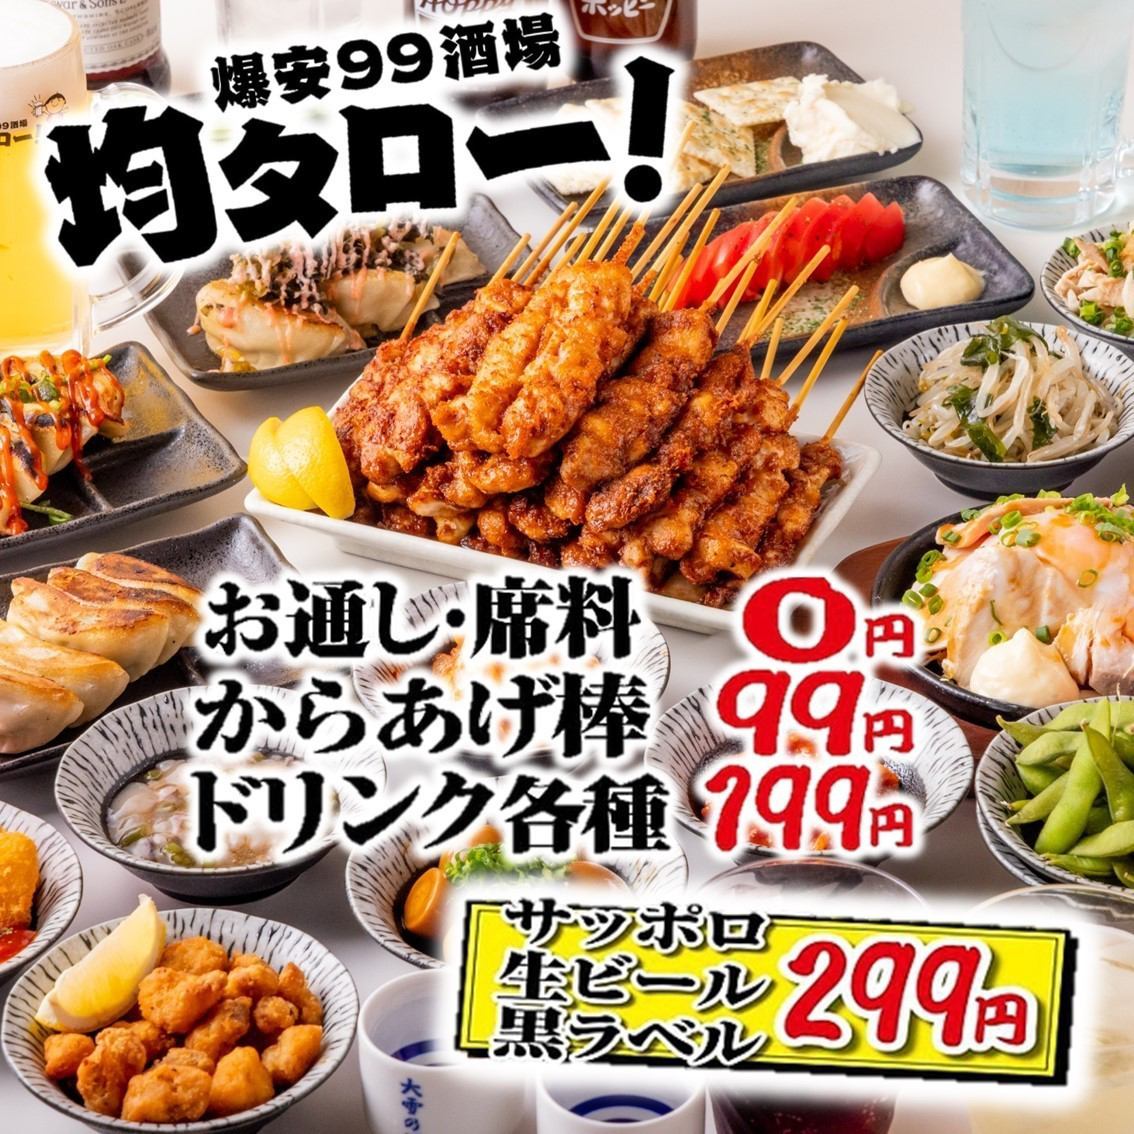 全品食べ放題&2時間飲み放題プラン＋もつ鍋食べ放題コース3500円